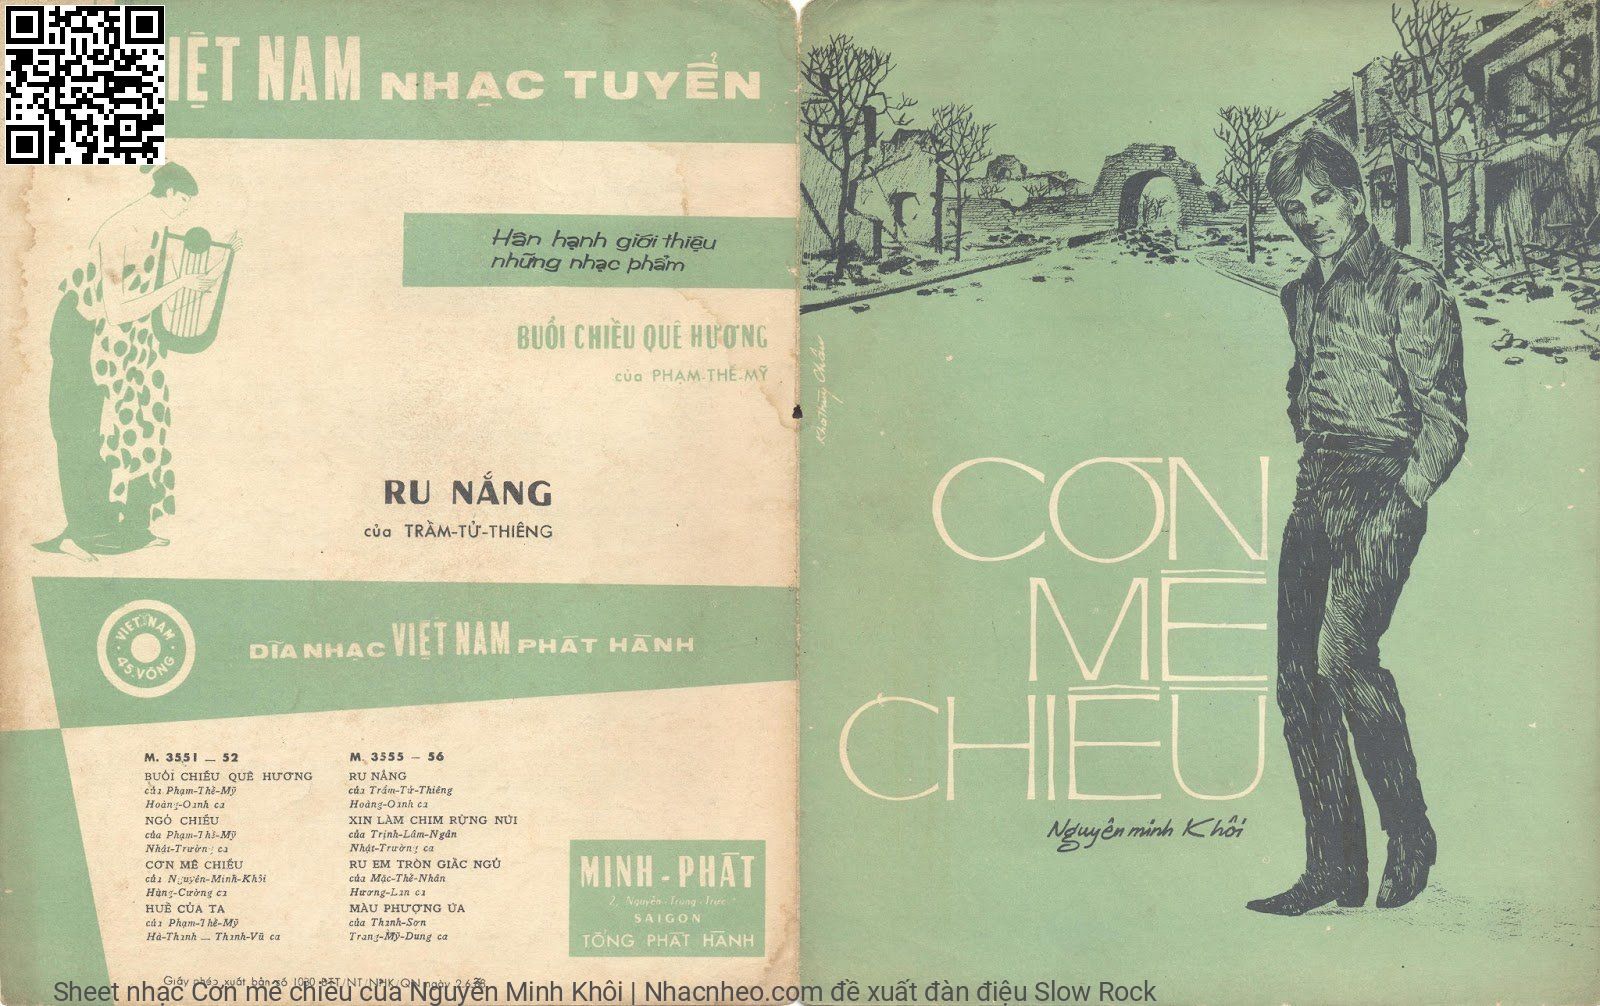 Cơn mê chiều - Nguyễn Minh Khôi